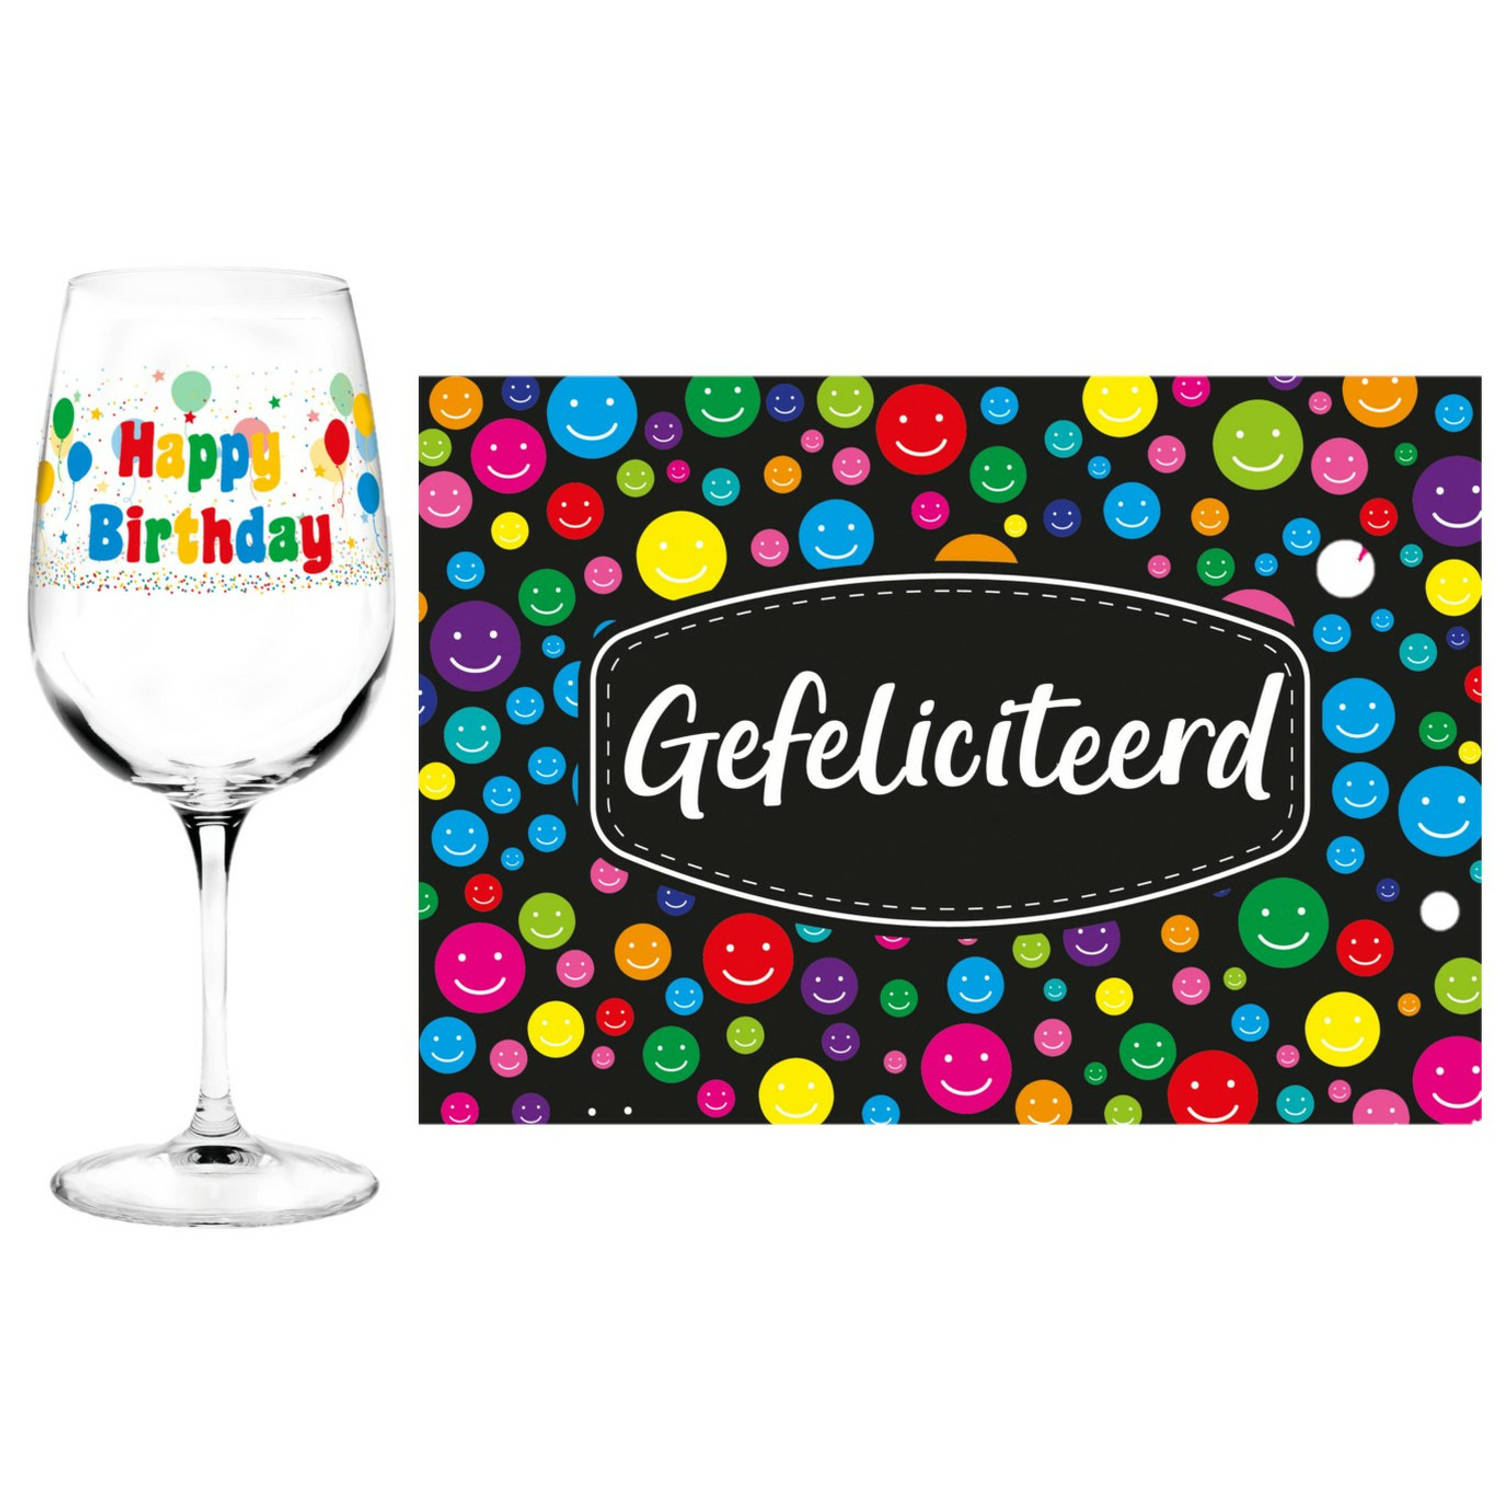 Happy Birthday cadeau glas 70 jaar verjaardag en Gefeliciteerd kaart feest glas wijn